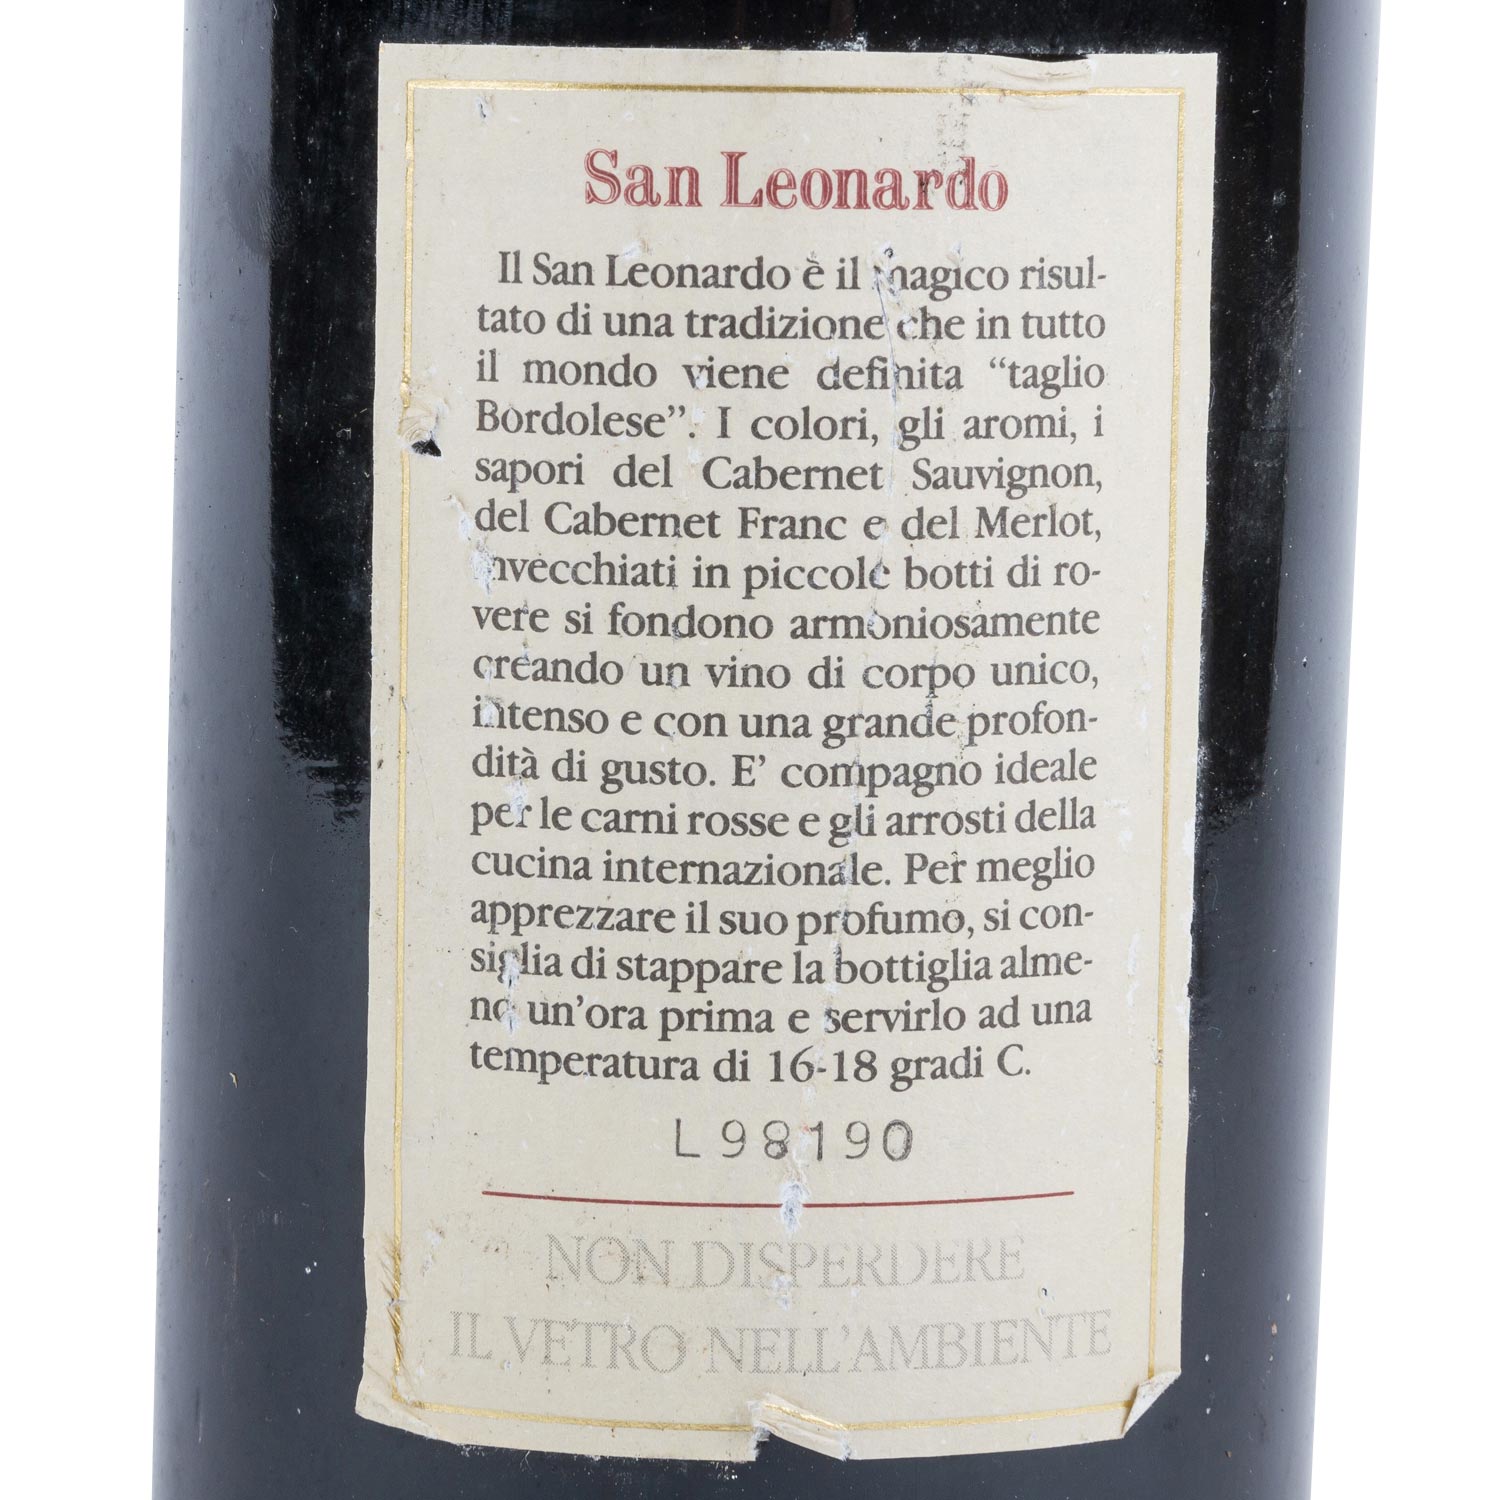 GUERRIERI GONZAGA 1 Flasche Tenuta di San Leonardo 1995, - Image 5 of 6